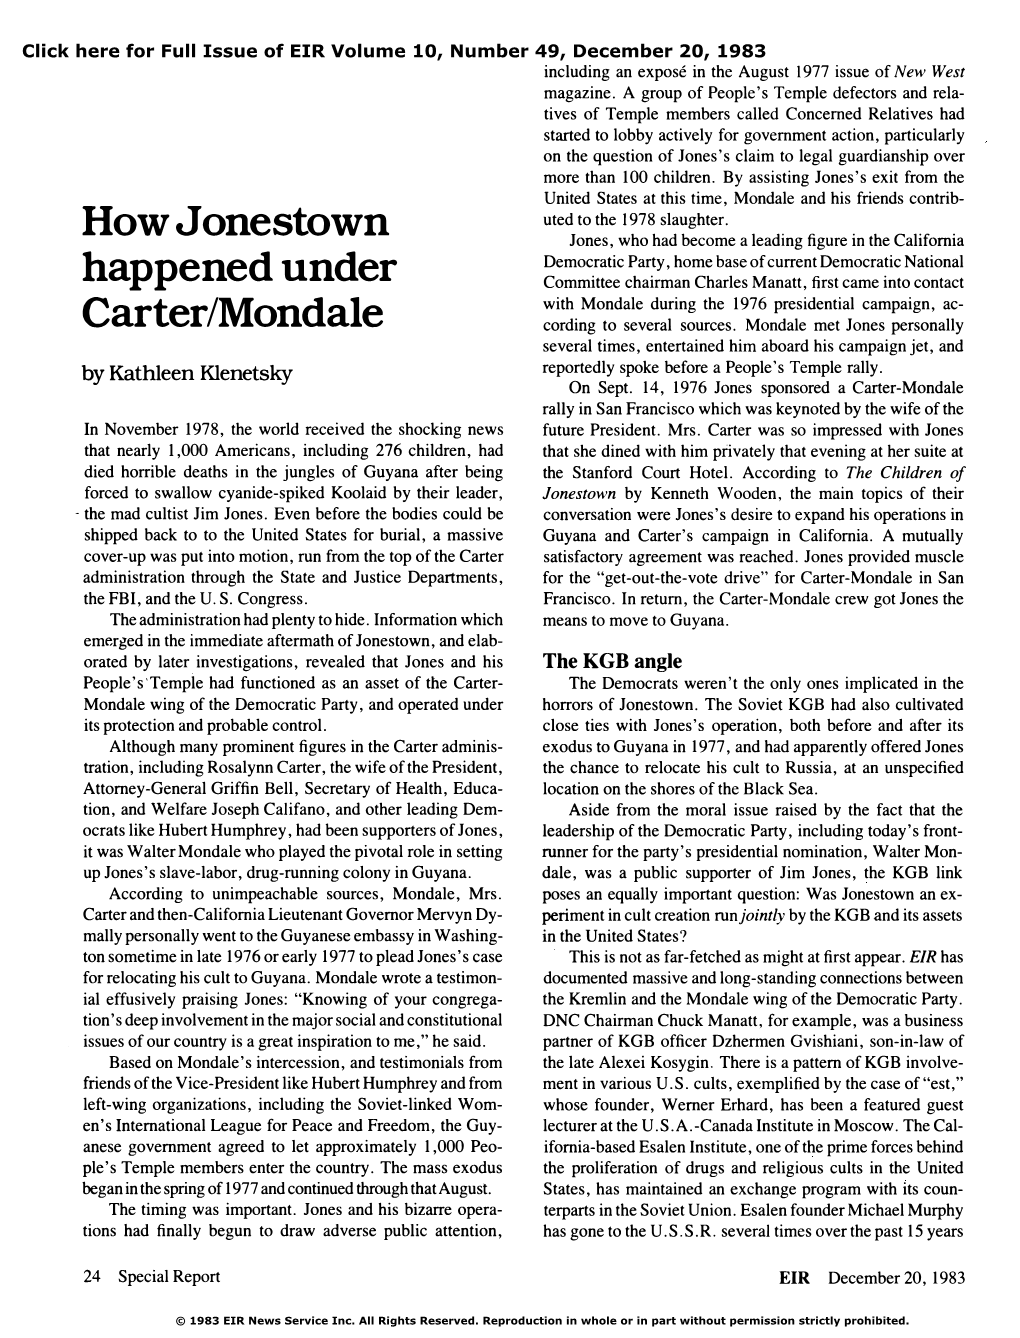 How Jonestown Happened Under Carter/Mondale